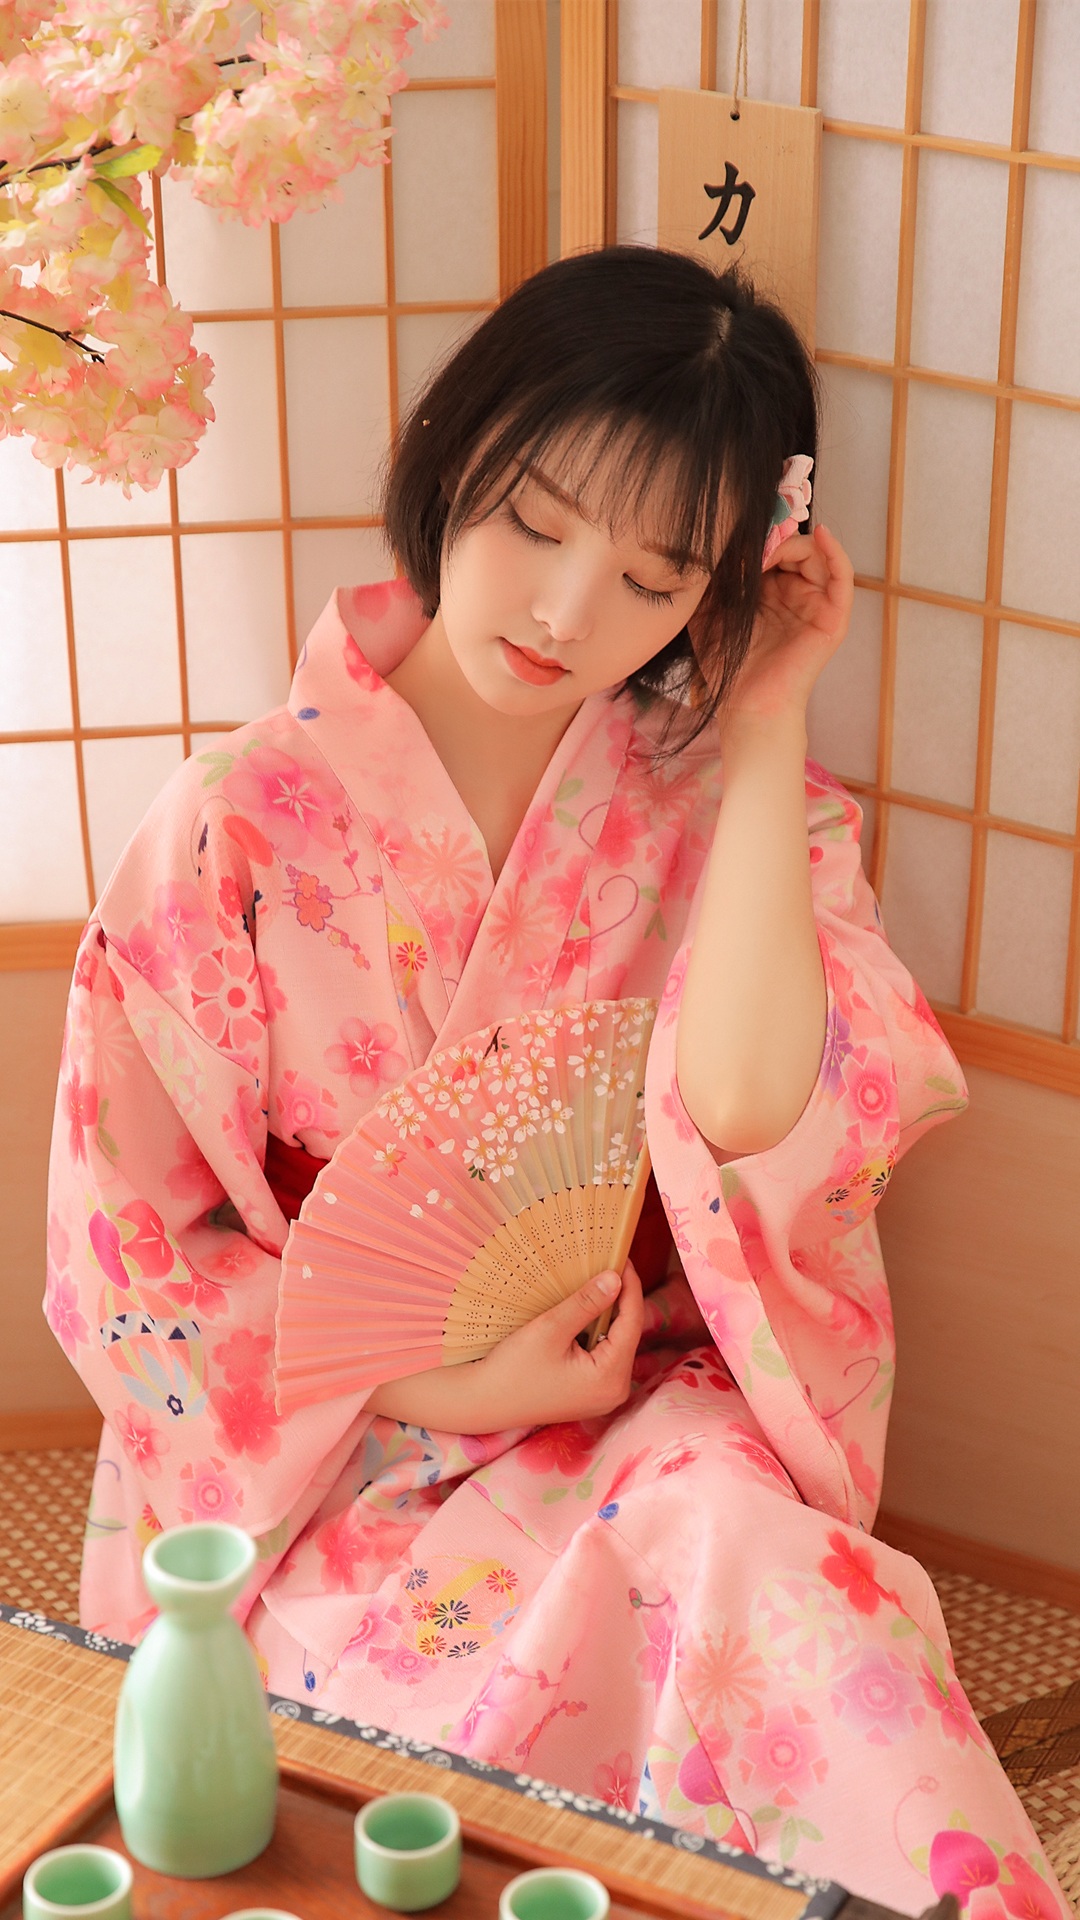 日系和服美女图片